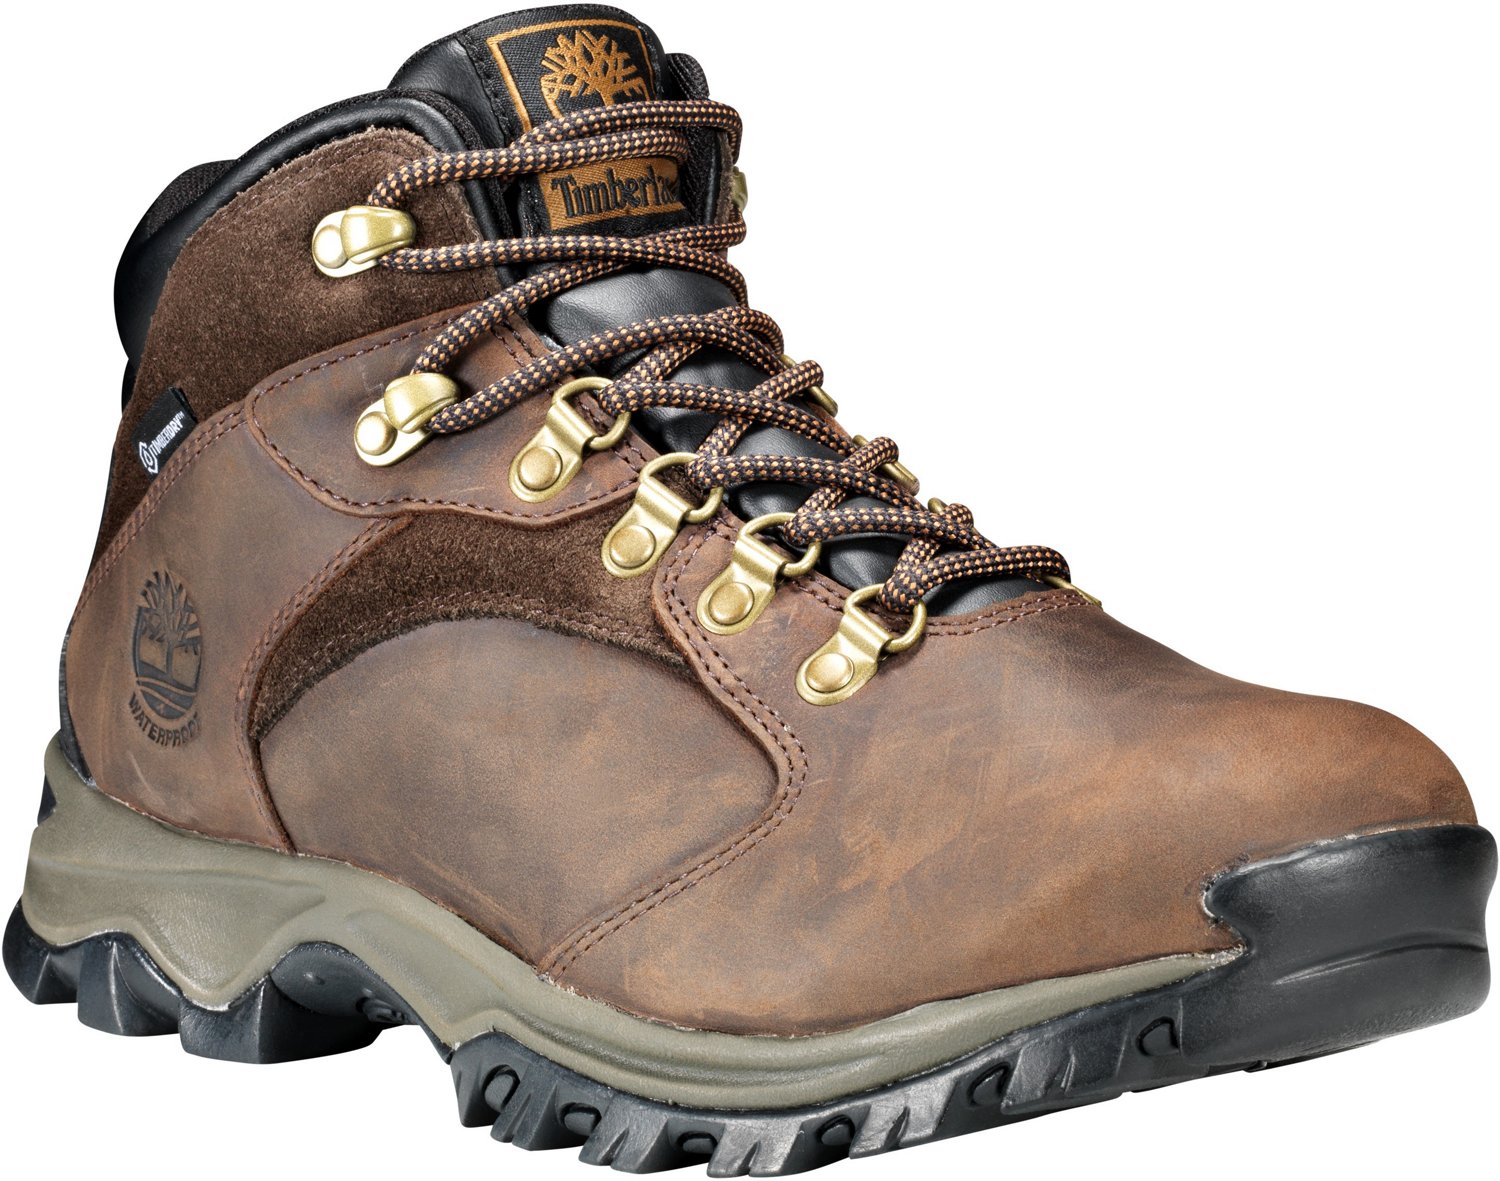 Men's Rock Waterproof Hiking Boots | Academy